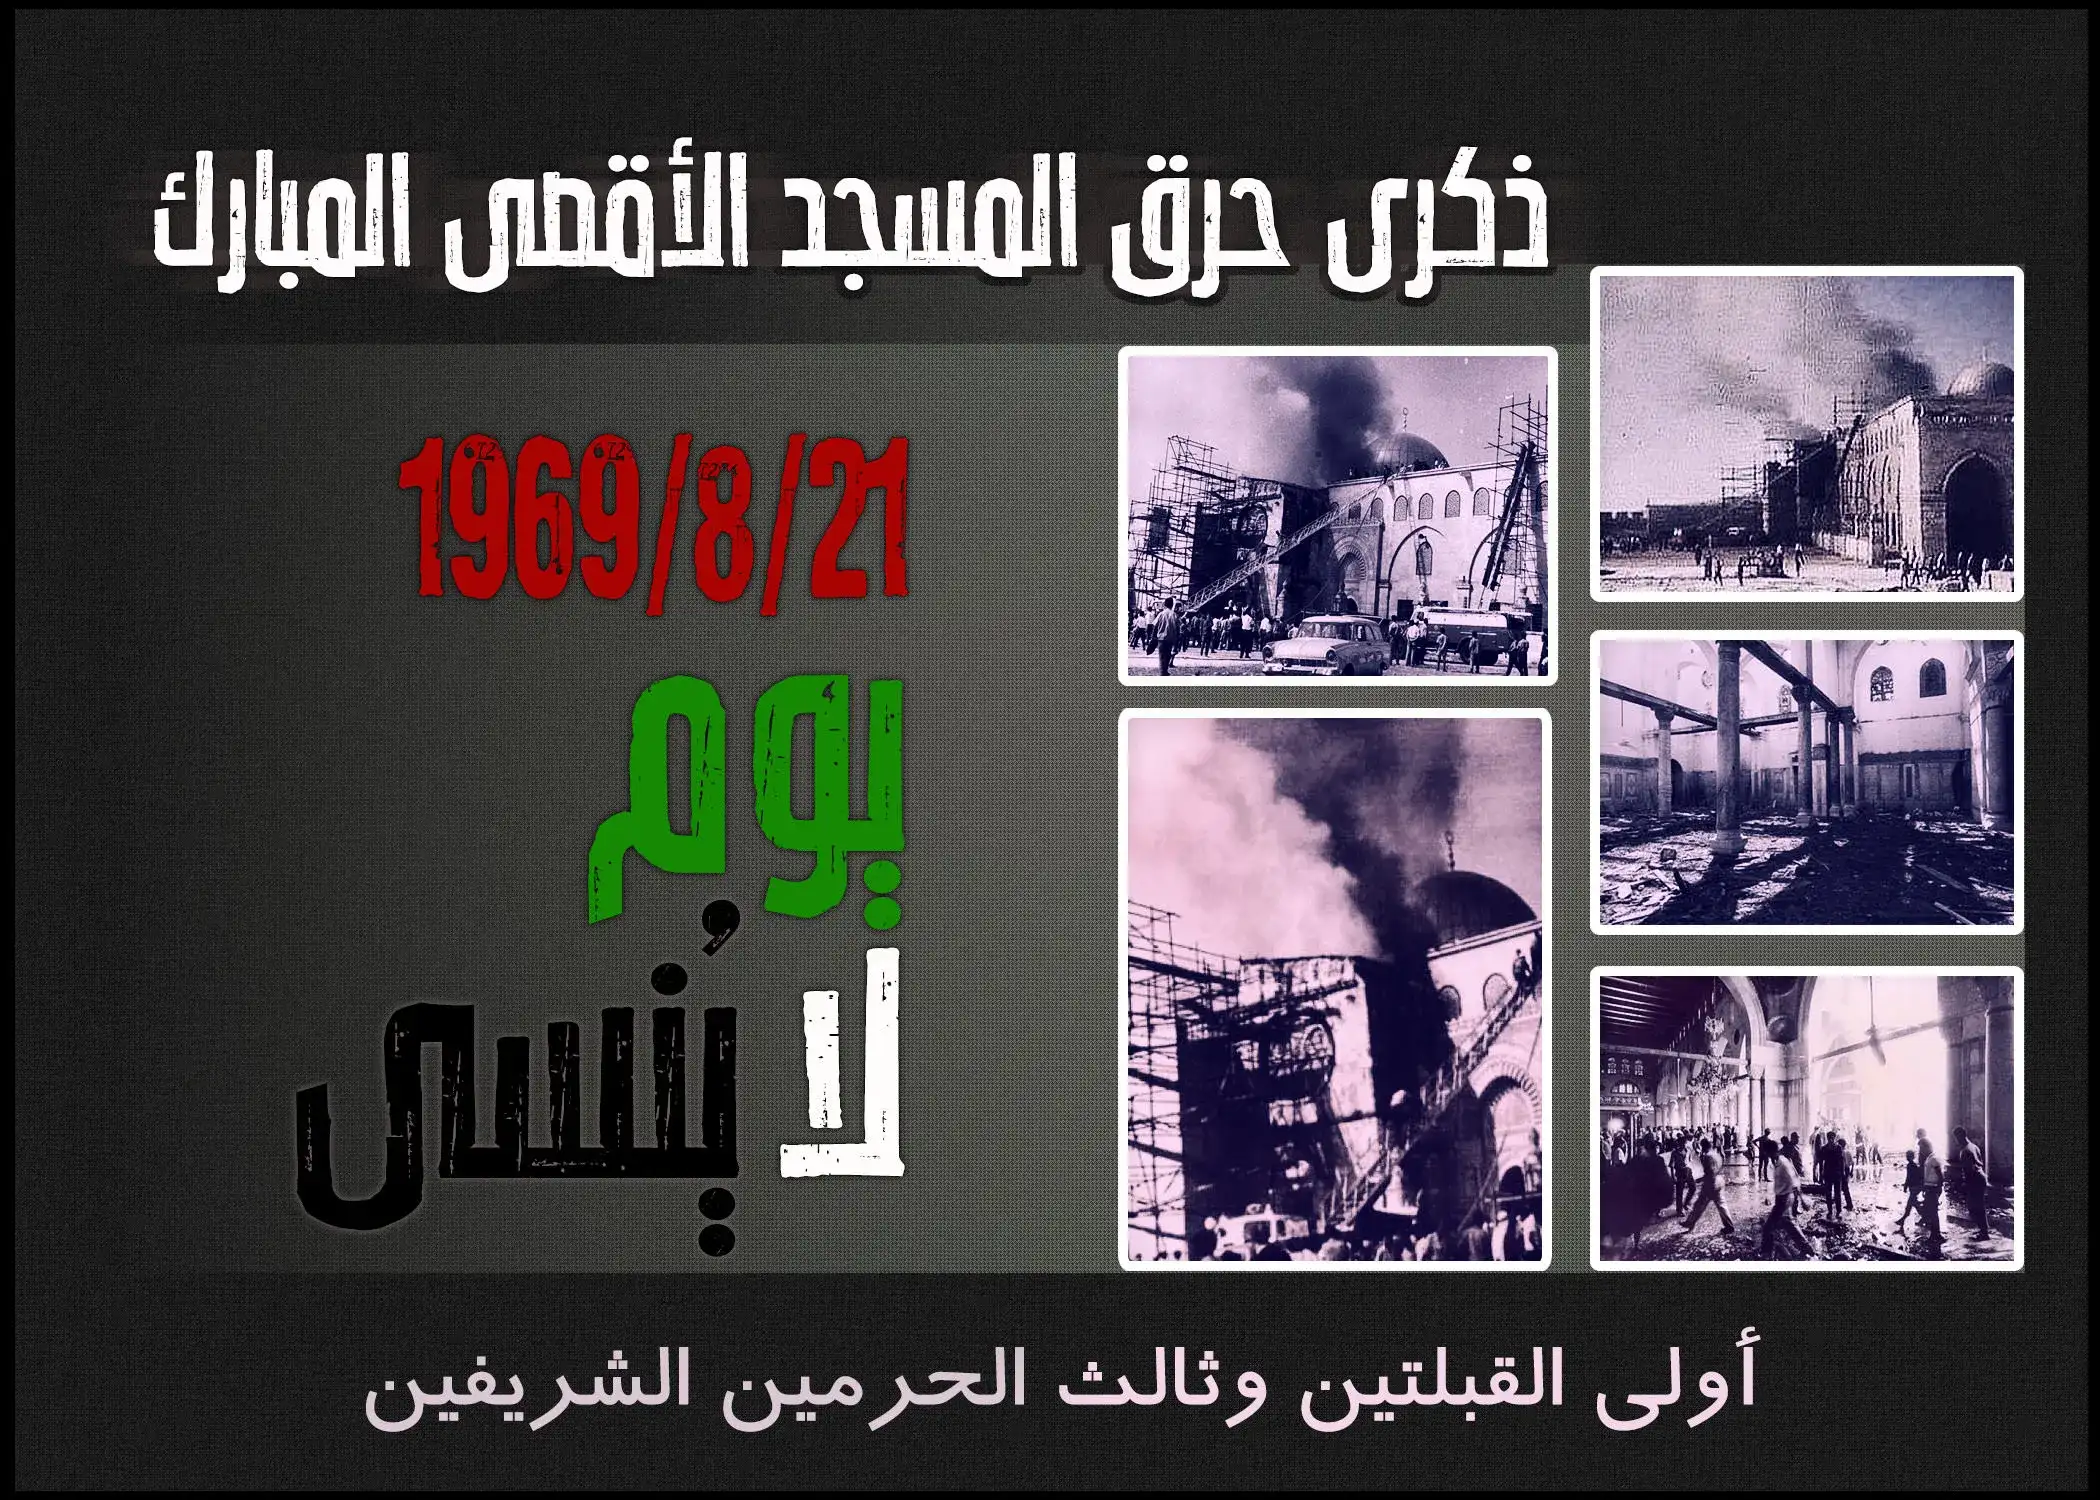 ذكرى حرق المسجد الأقصى المبارك 1969-8-21